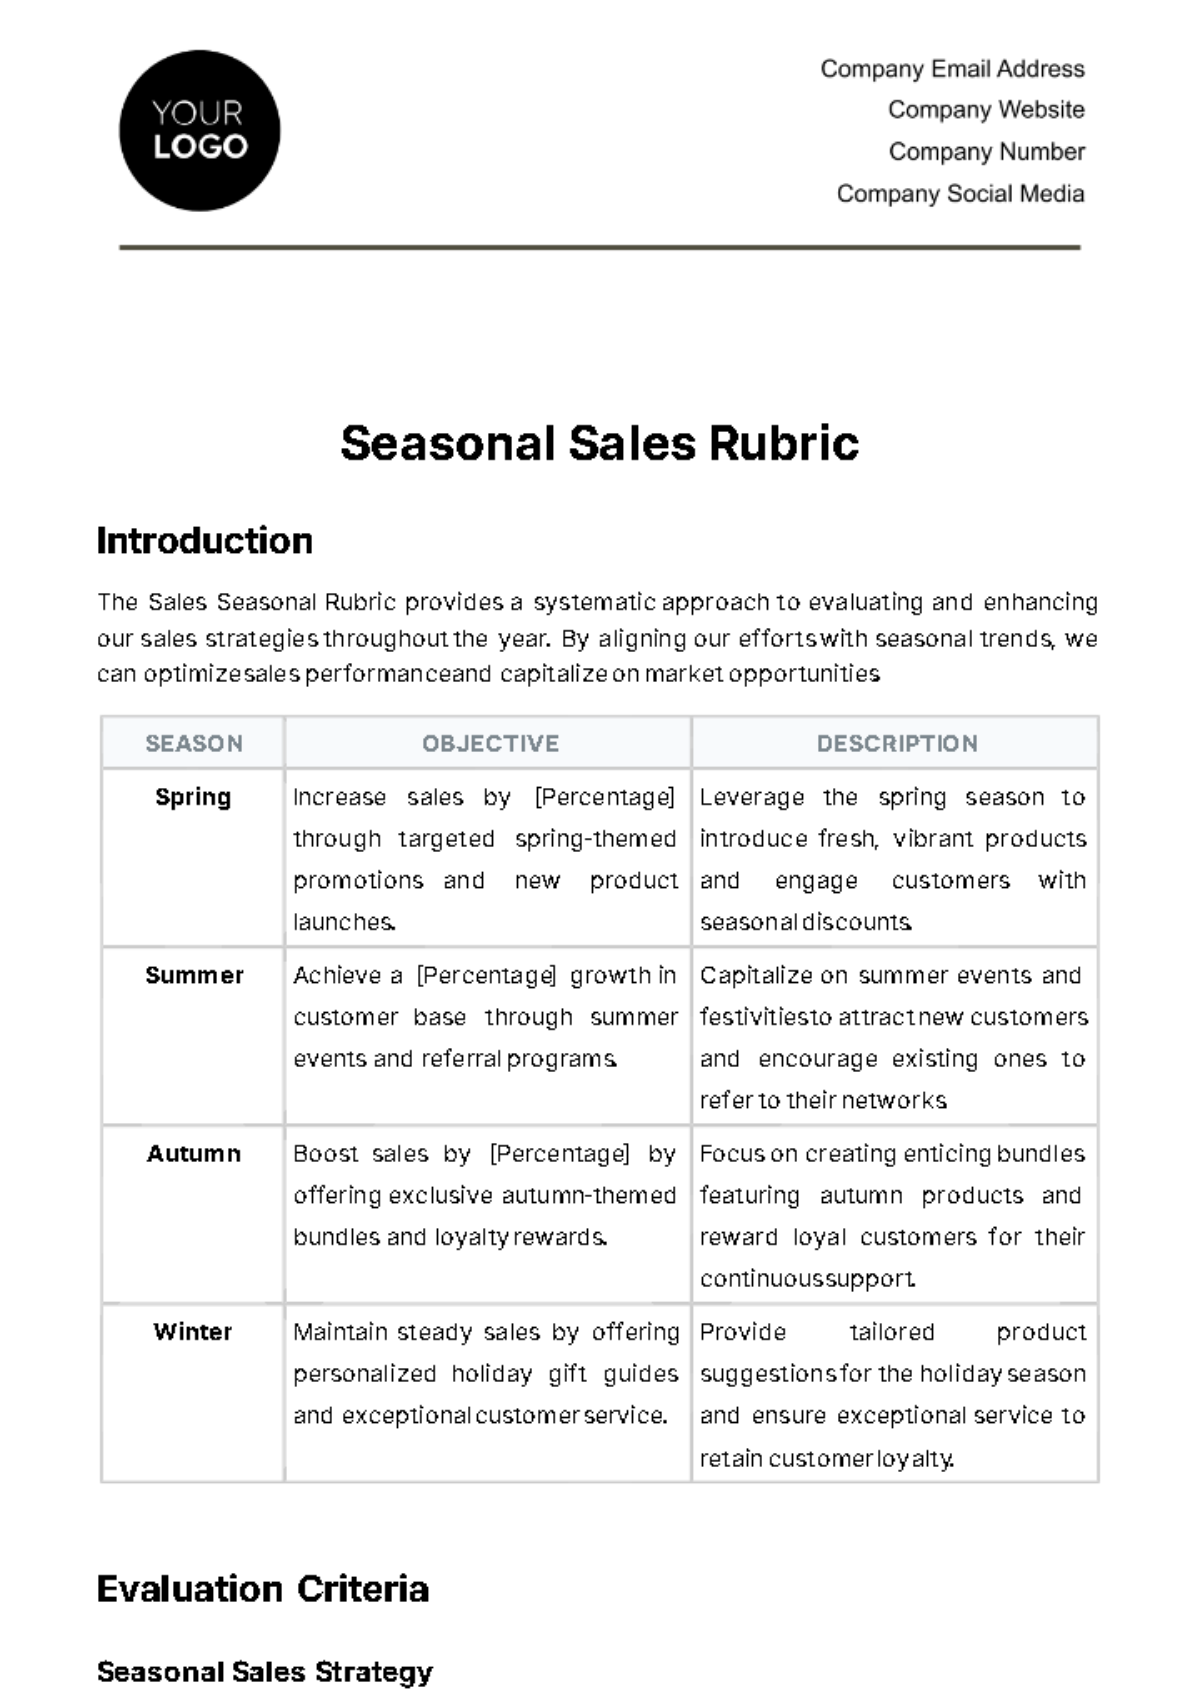 Sales Seasonal Rubric Template